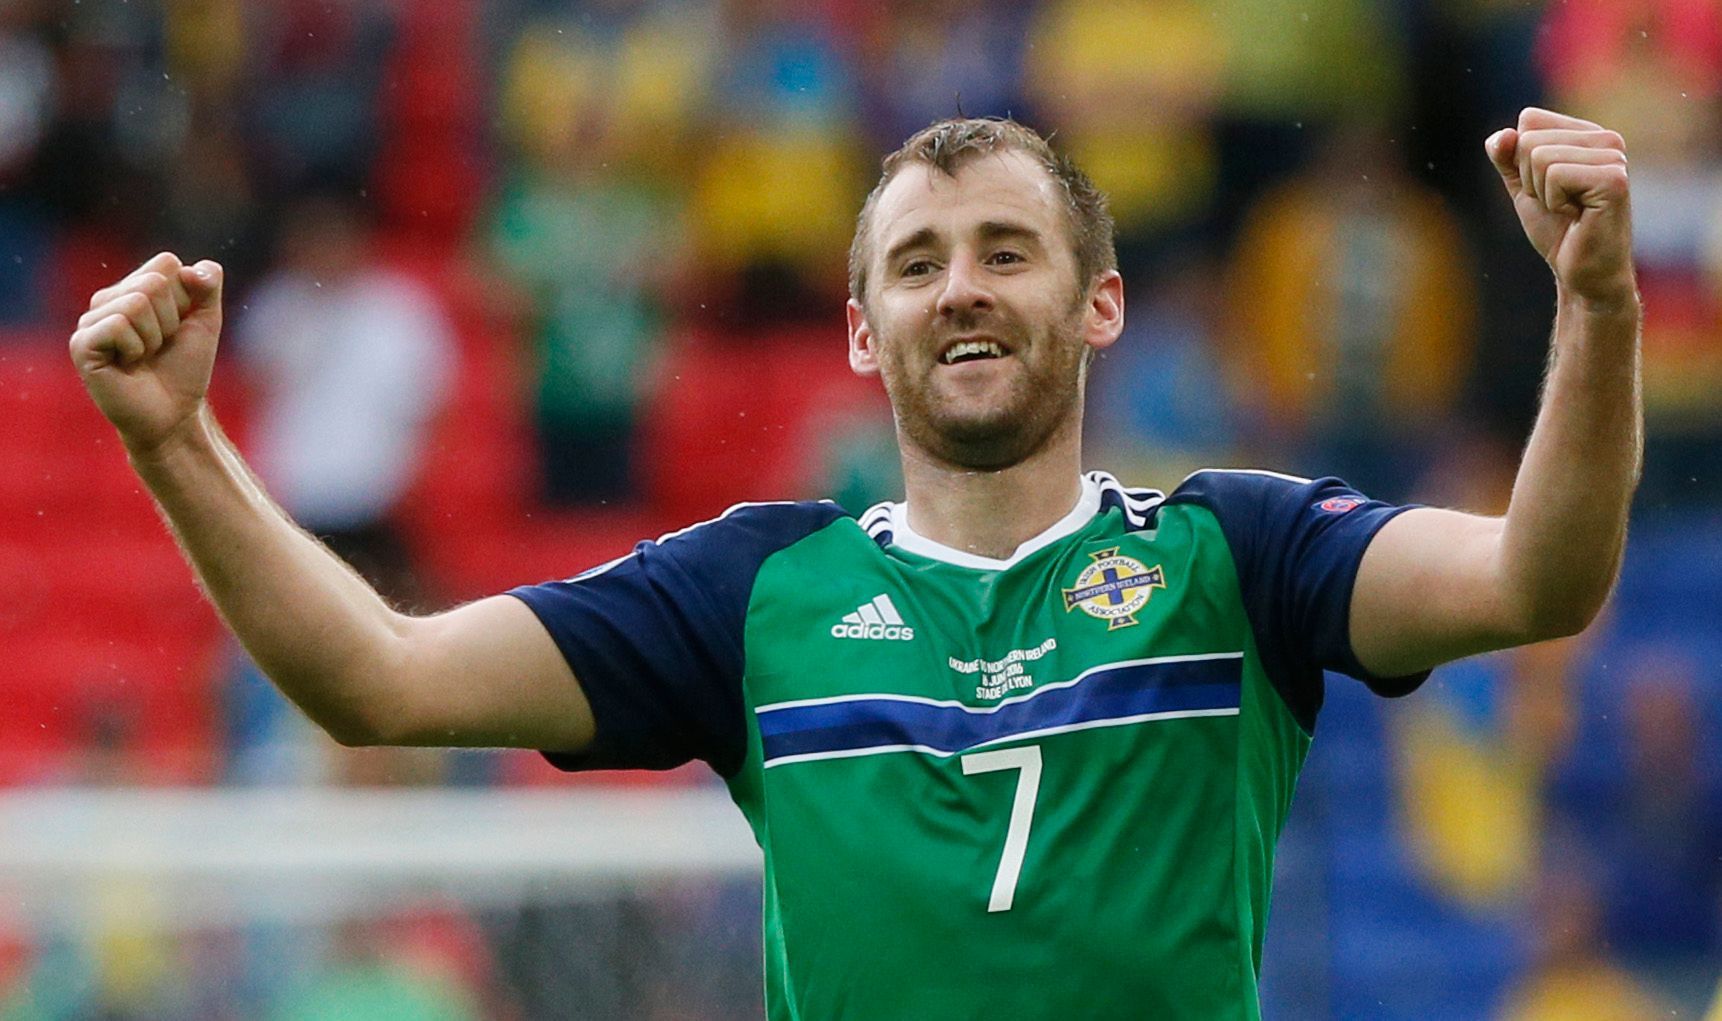 Euro 2016 Severní Irsko-Ukrajina:  Niall McGinn slaví gól na 2:0